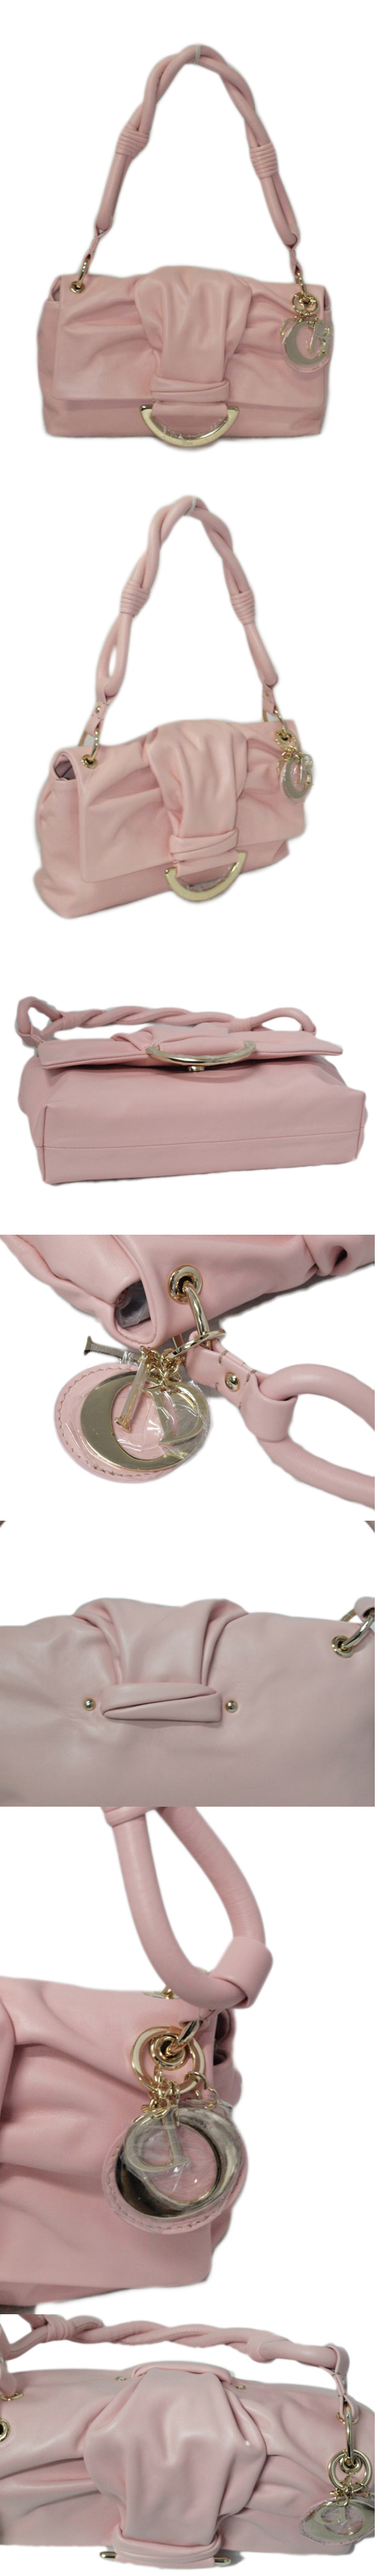 ブランド通販Dior-ディオール-bag-44580-pink激安屋-ブランドコピー